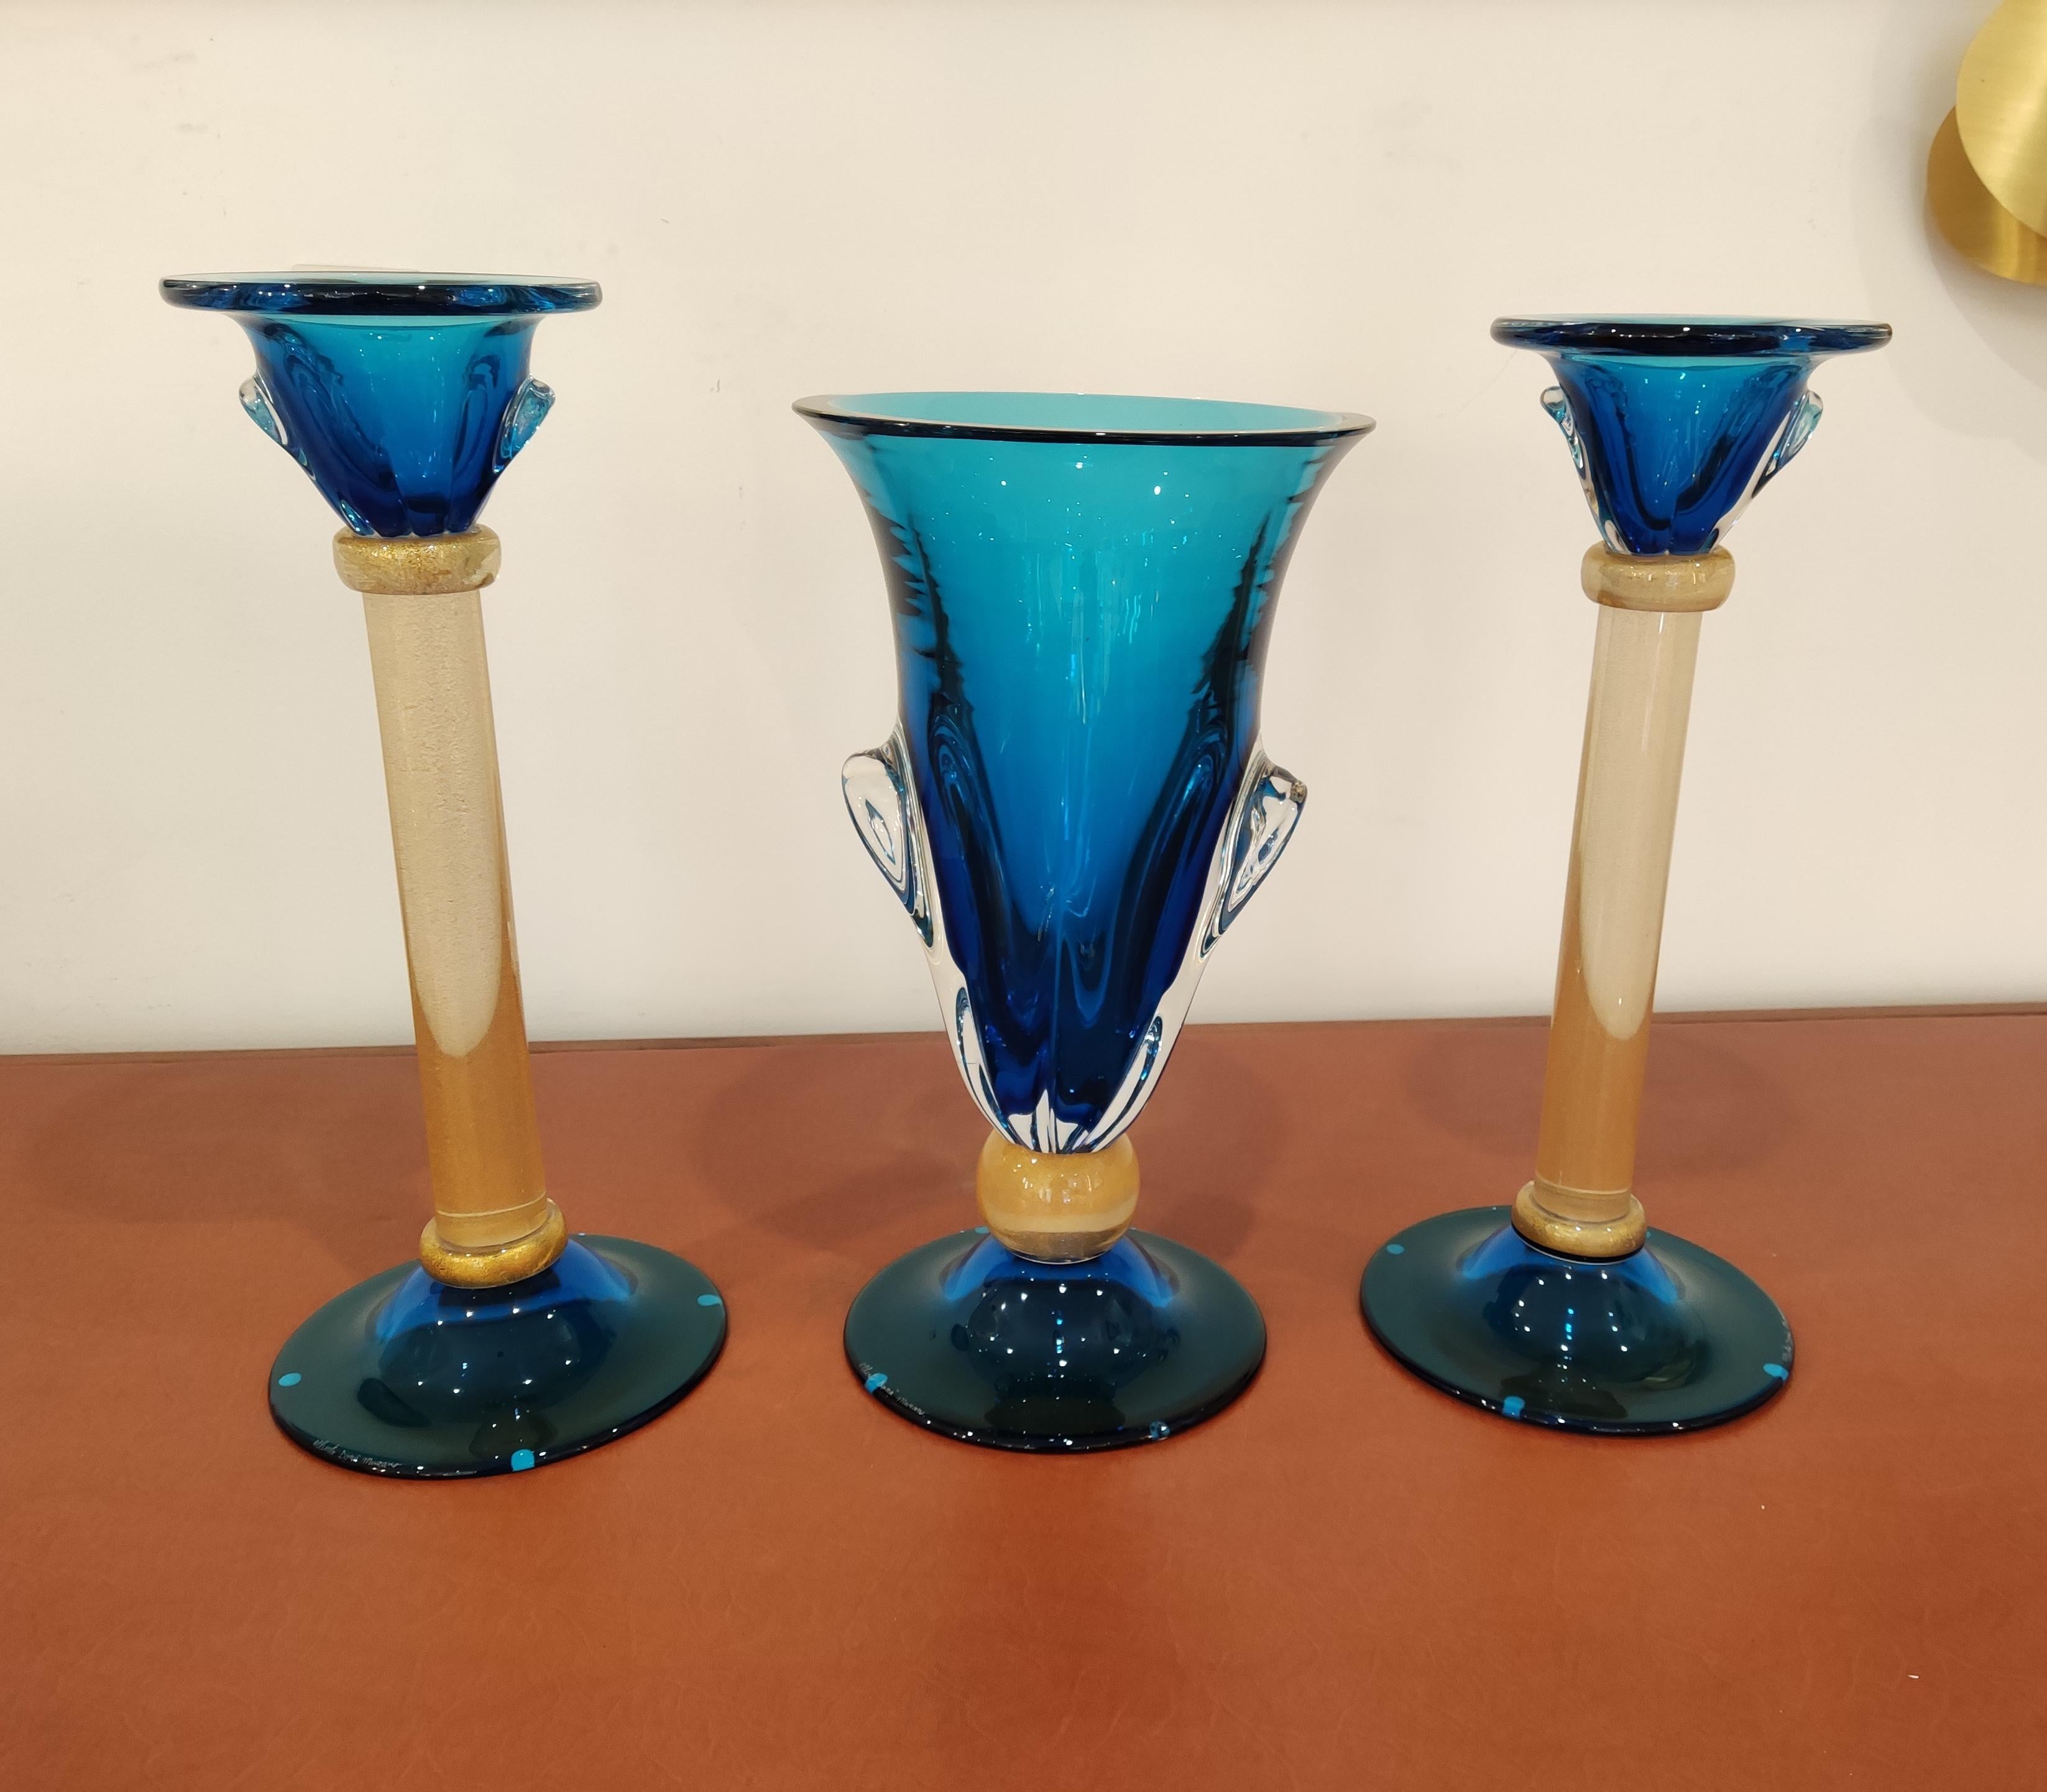 Ensemble de 3 pièces (2 chandeliers et 1 vase) d'Alberto Donà, toutes signées.
Mesures : Vase : H 45 x 25cm
Chandeliers : H 49 x 21cm.
  